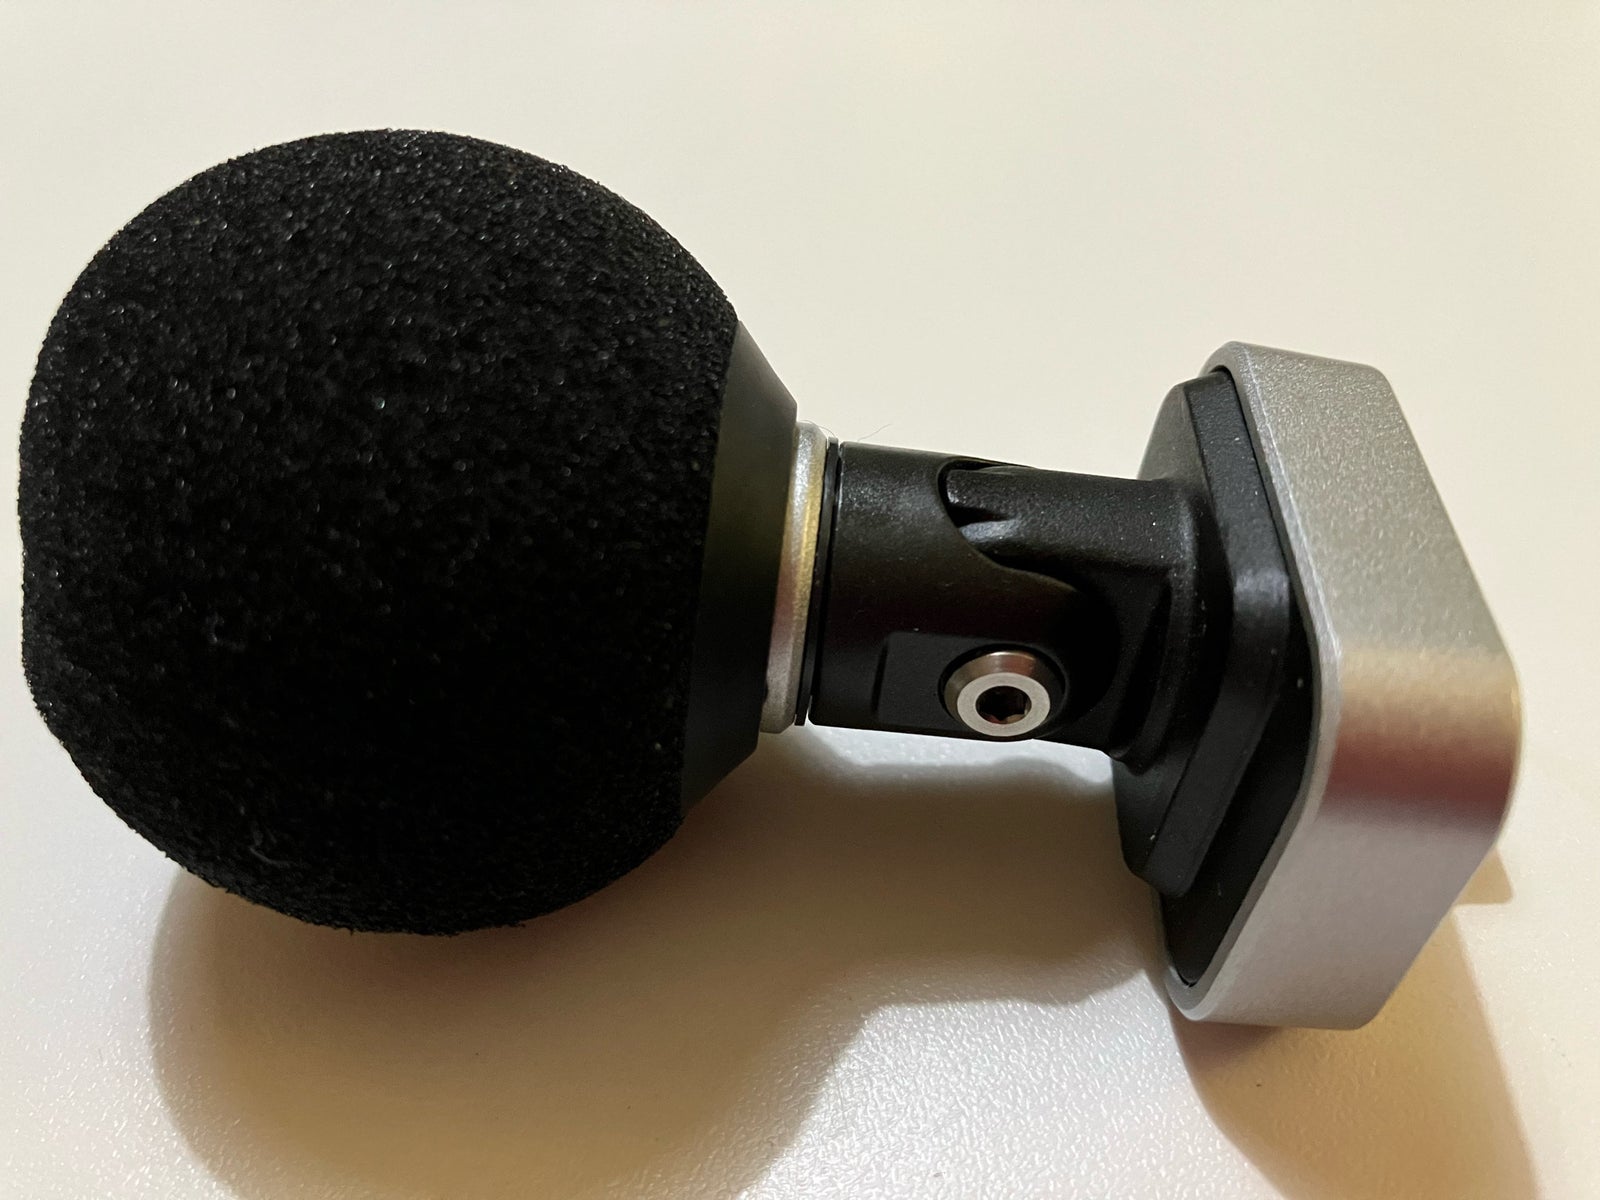 Mikrofon , Sture MV 88